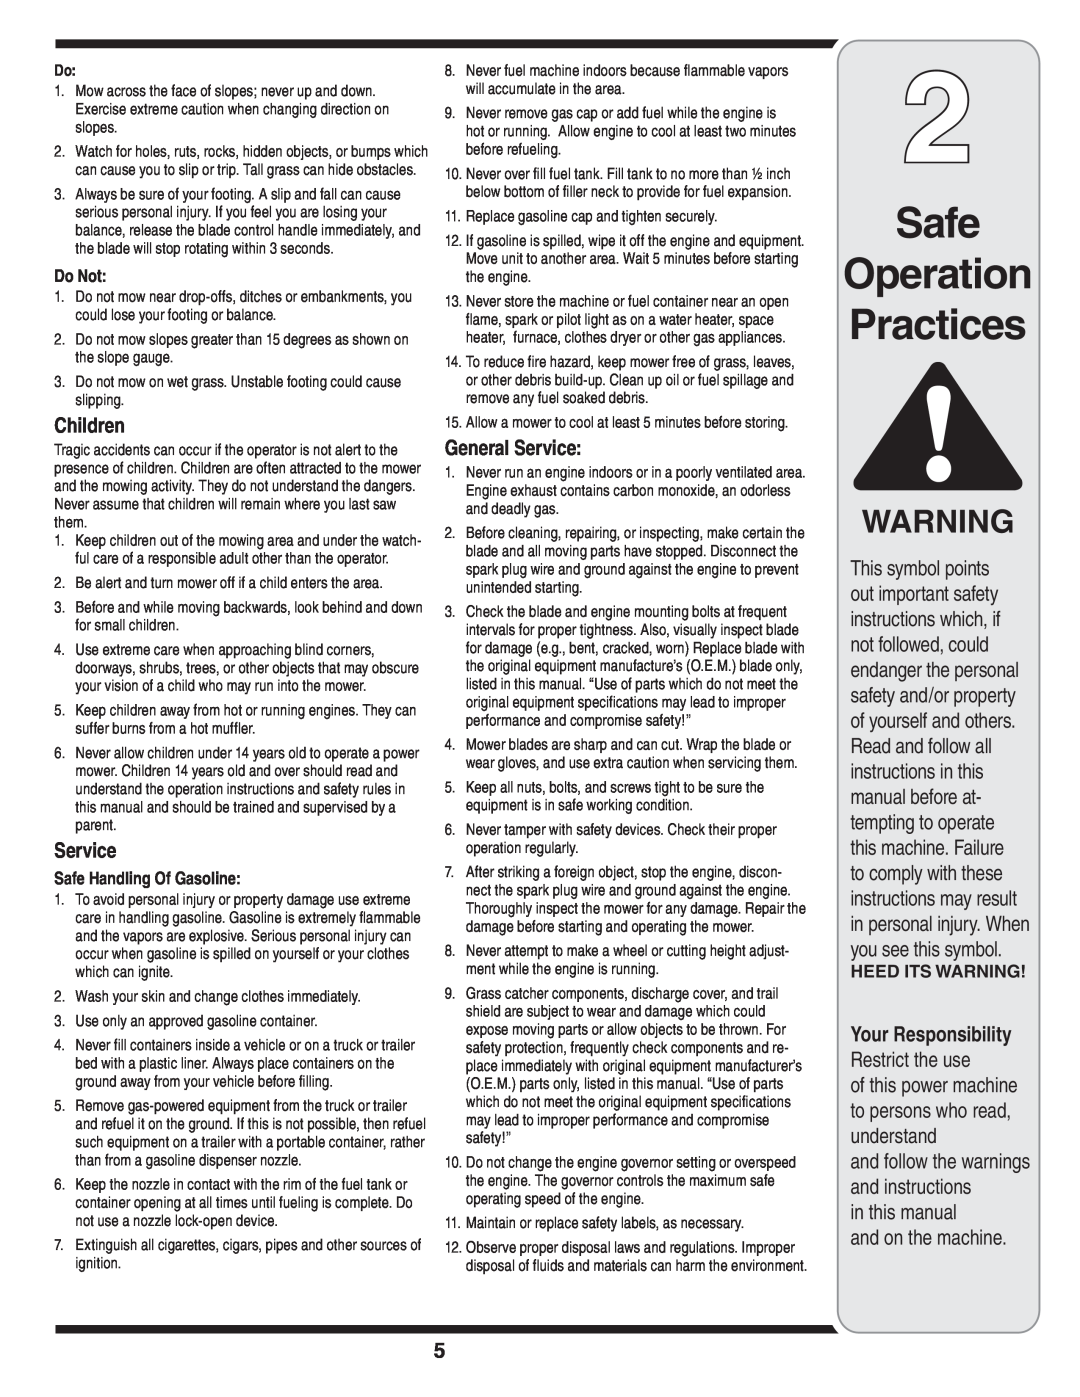 Yard-Man 100 manual Safe Operation Practices, Children, General Service, Do Not, Safe Handling Of Gasoline 